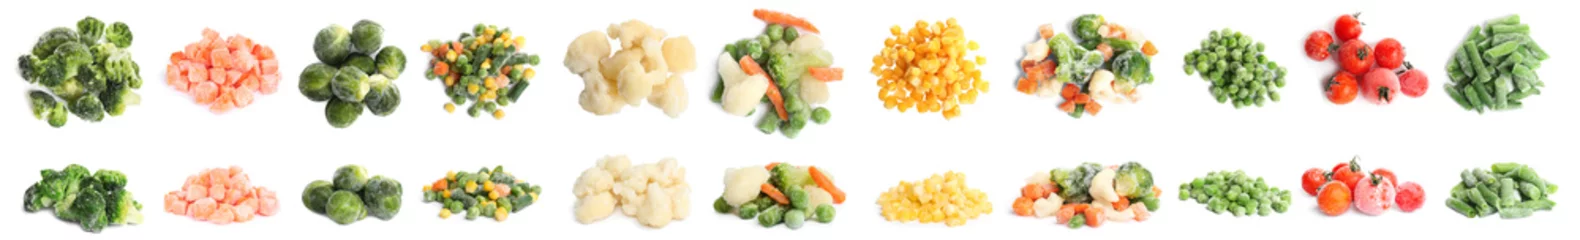 Foto op Plexiglas Verse groenten Set of different frozen vegetables on white background. Banner design